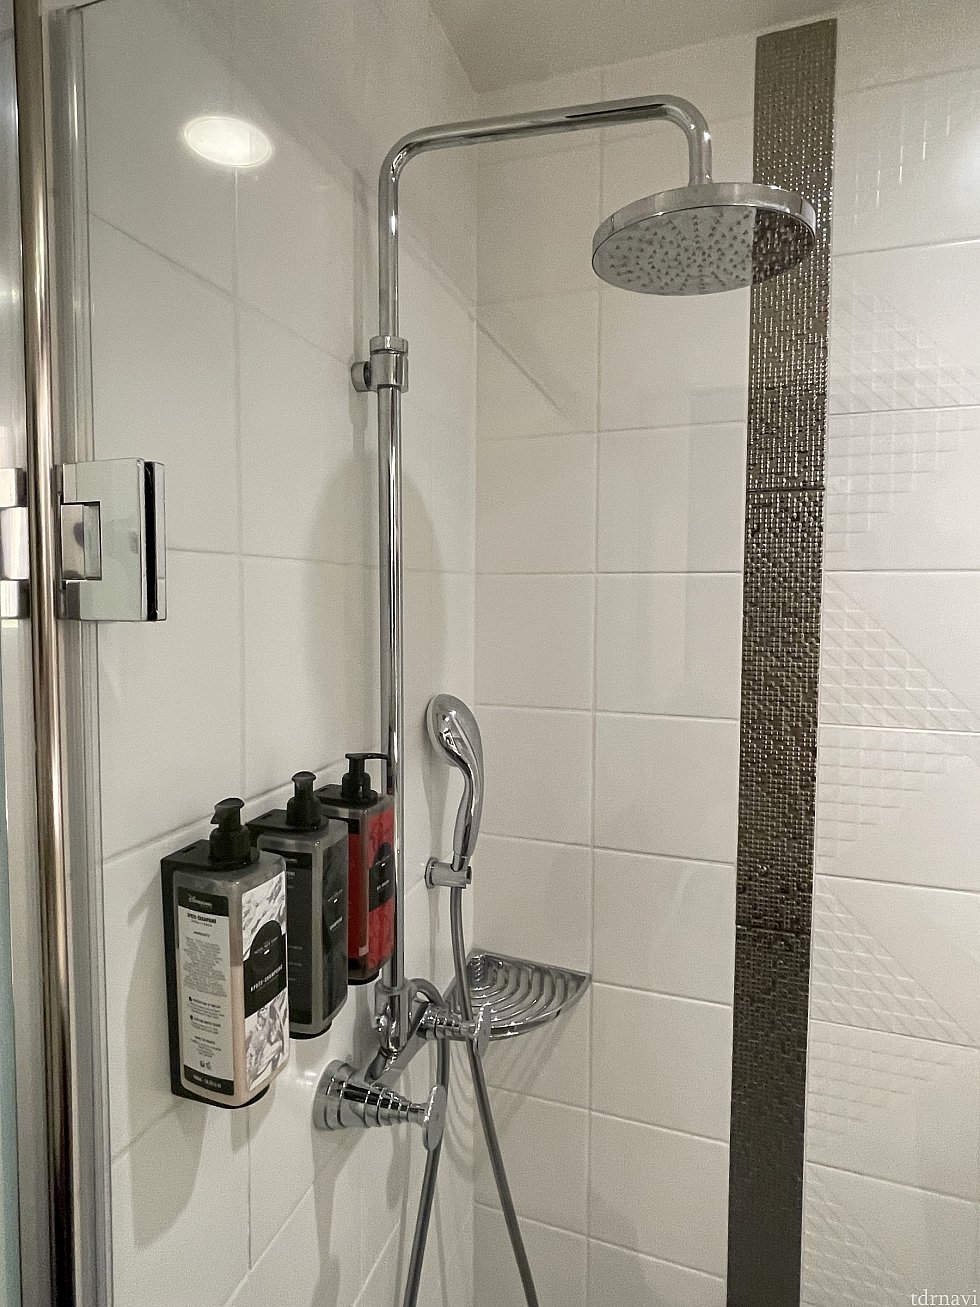 シャワーは吊りタイプとハンディの2タイプ<br>
コンディショナー、シャンプー、ボディーソープ設備あり